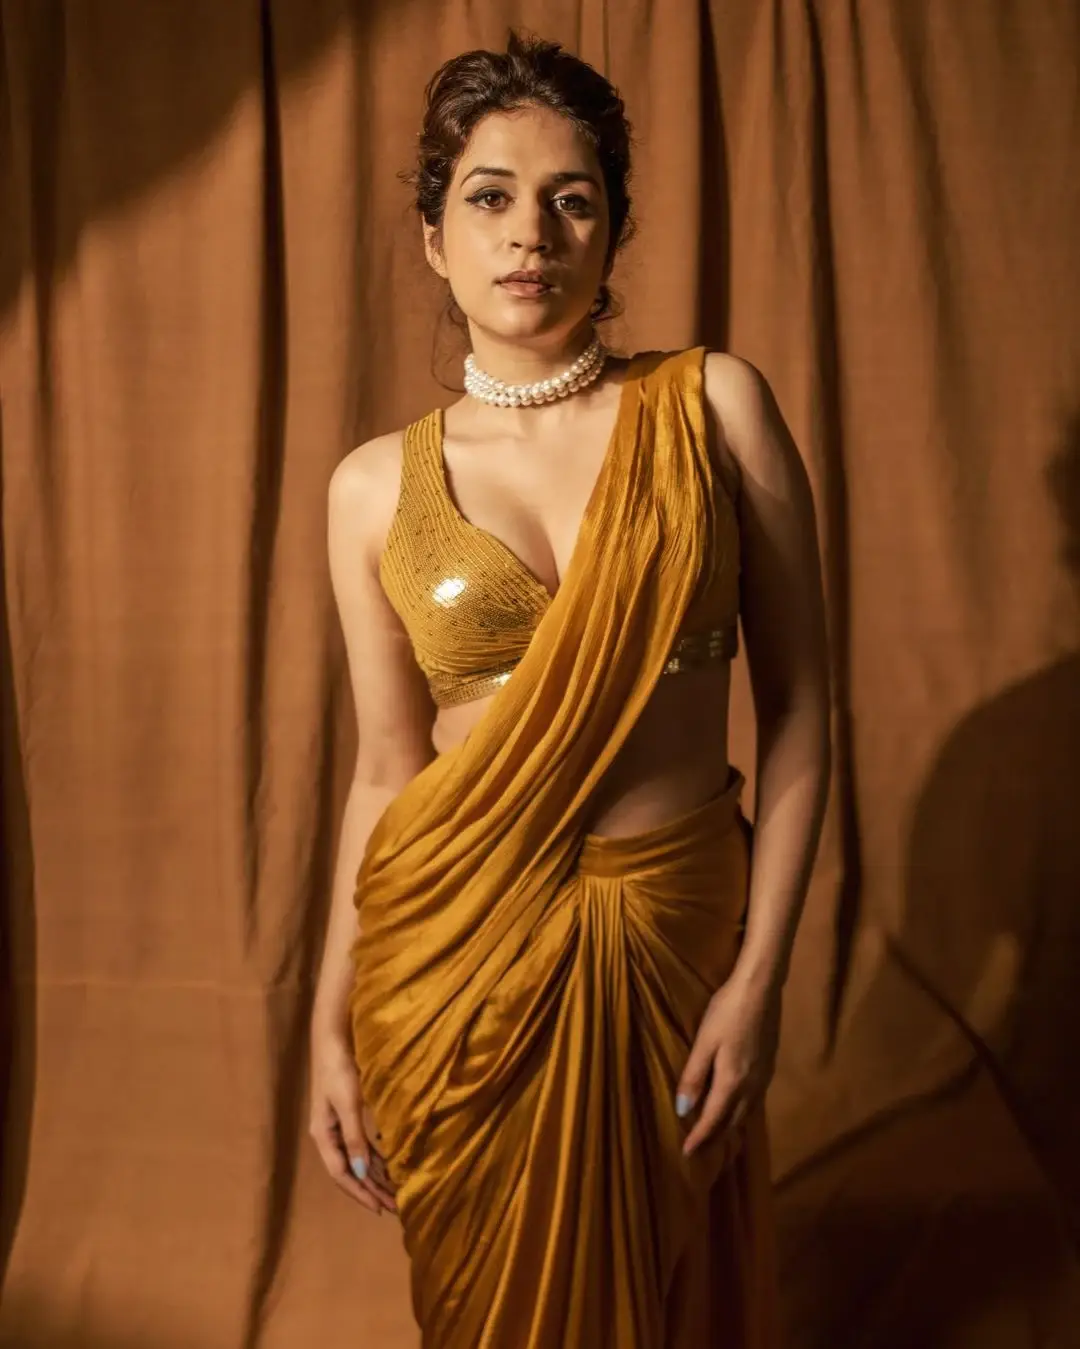 BEAUTIFUL INDIAN ACTRESS SHRADDHA DAS IN YELLOW SAREE